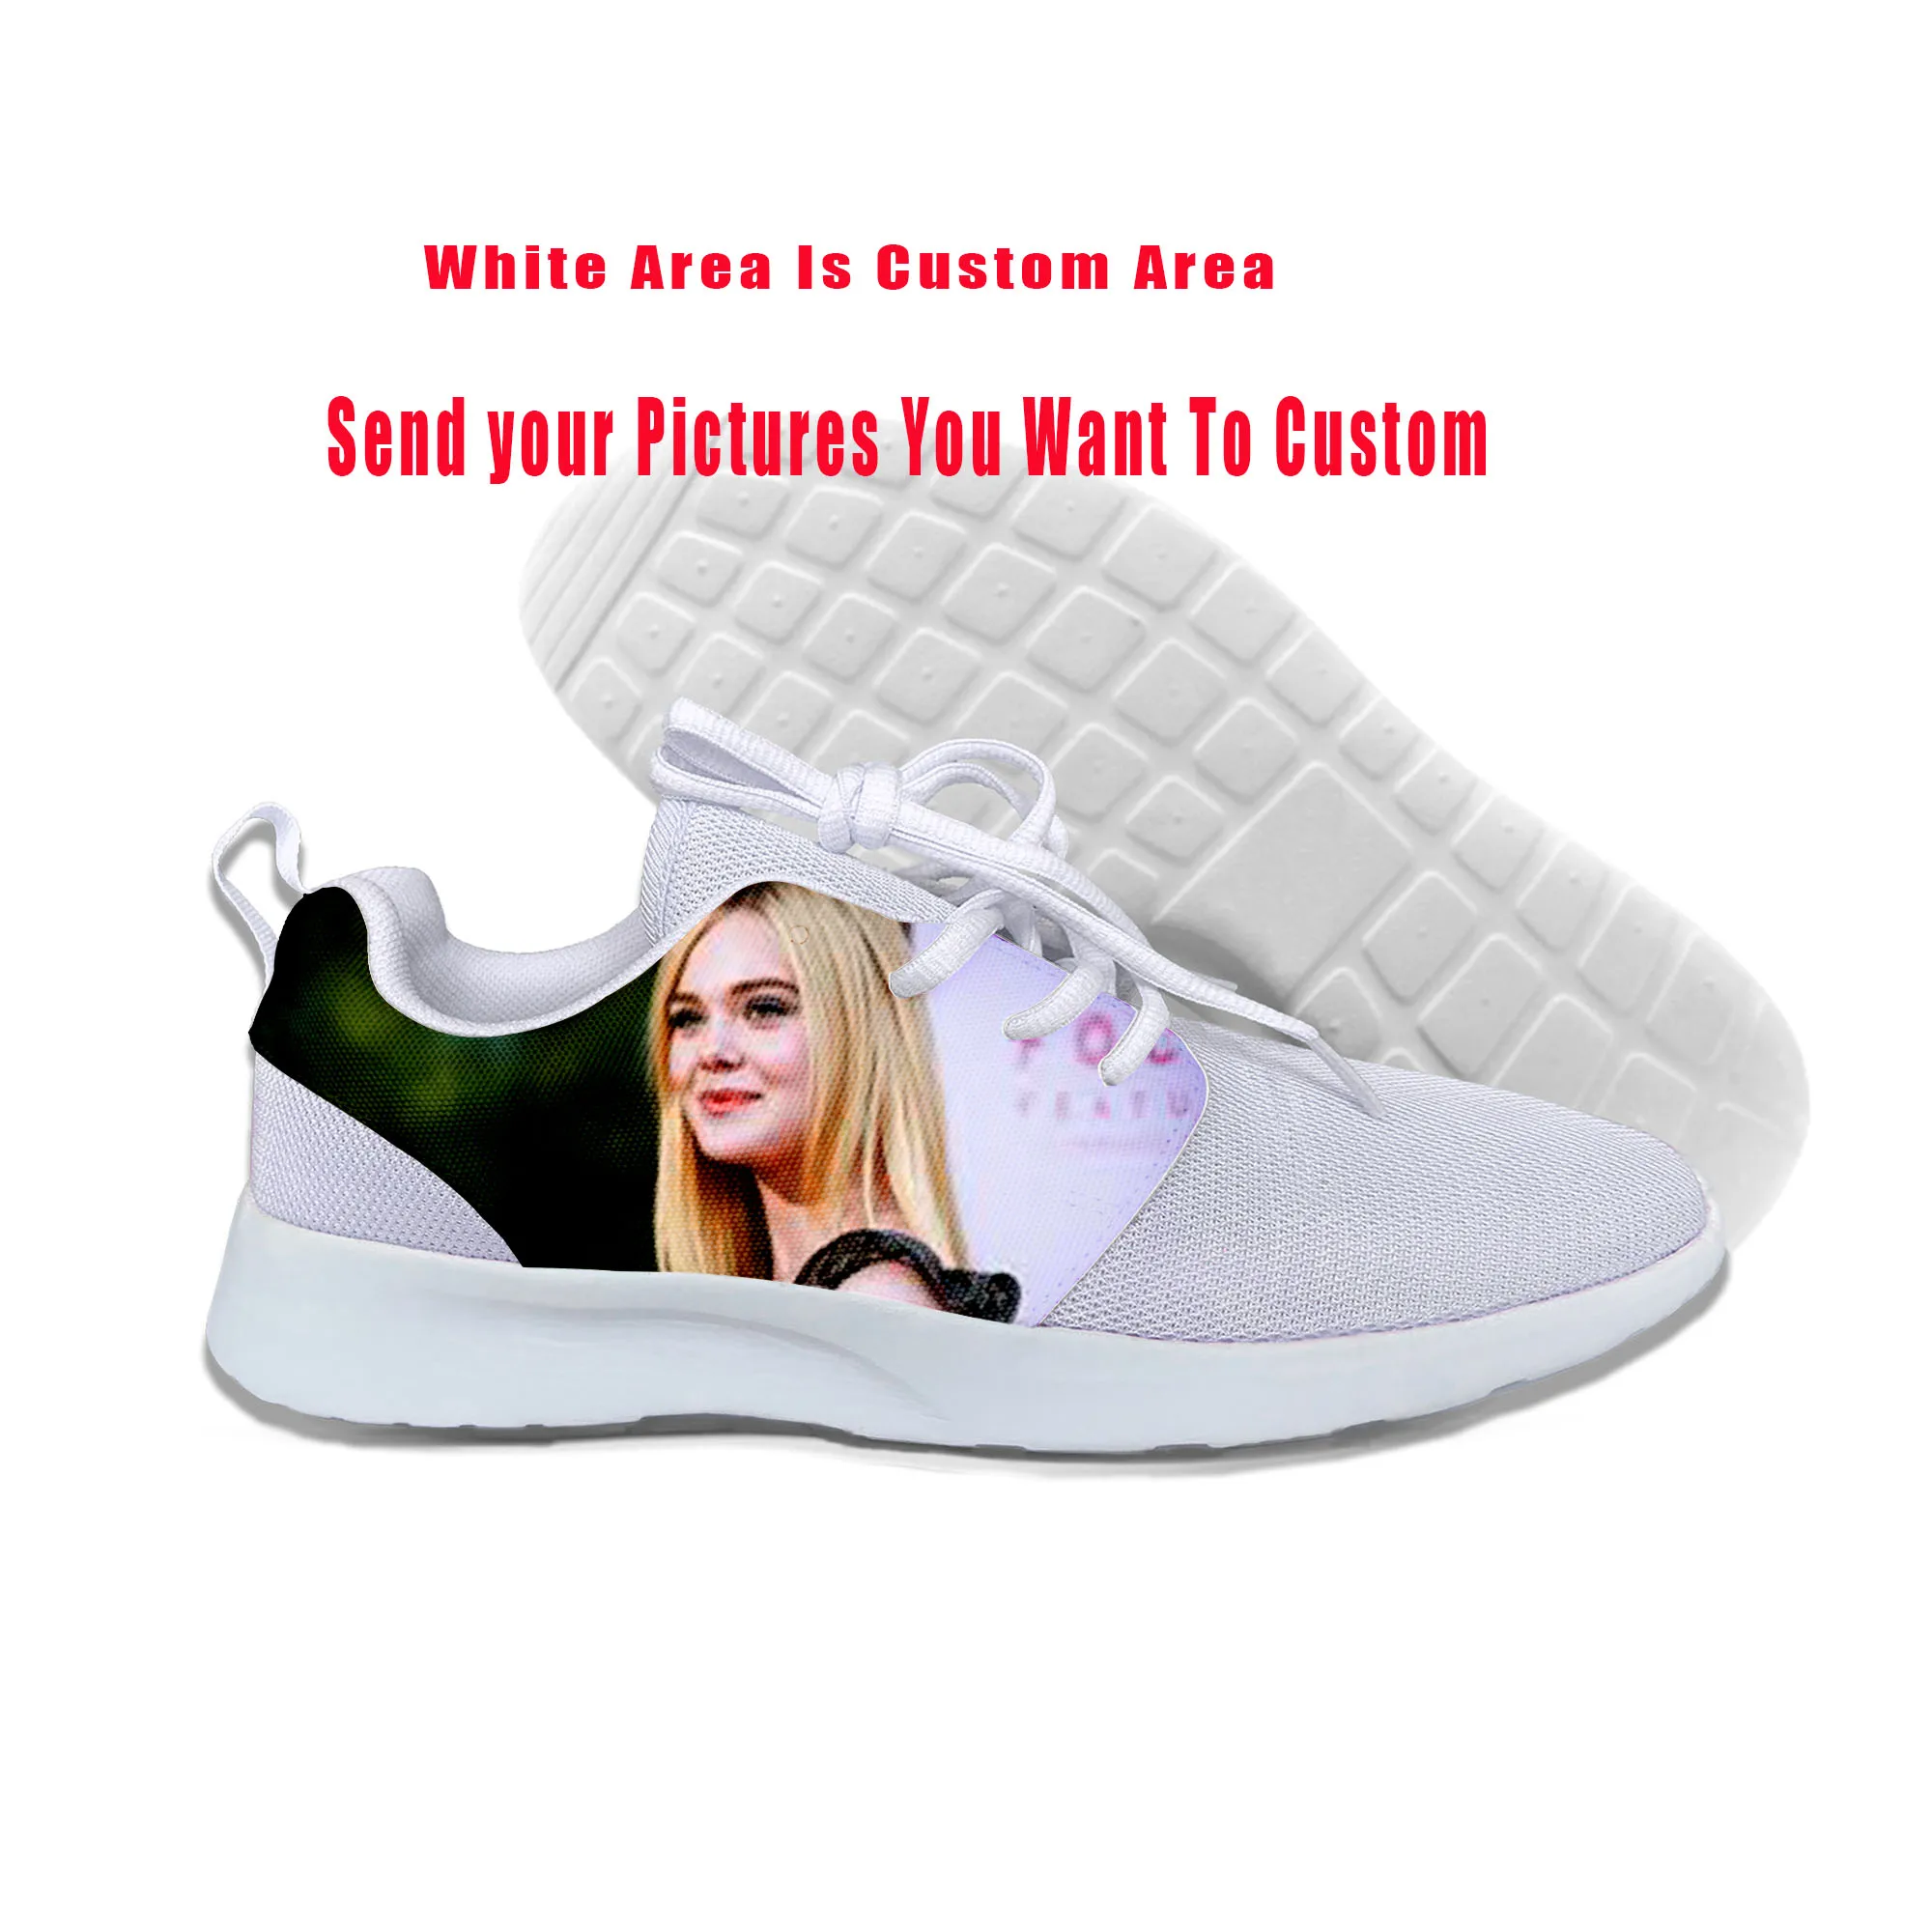 

Модные забавные летние высококачественные кроссовки, модная повседневная обувь с 3D-принтом для мужчин и женщин, сценическая одежда Elle Fanning, ...